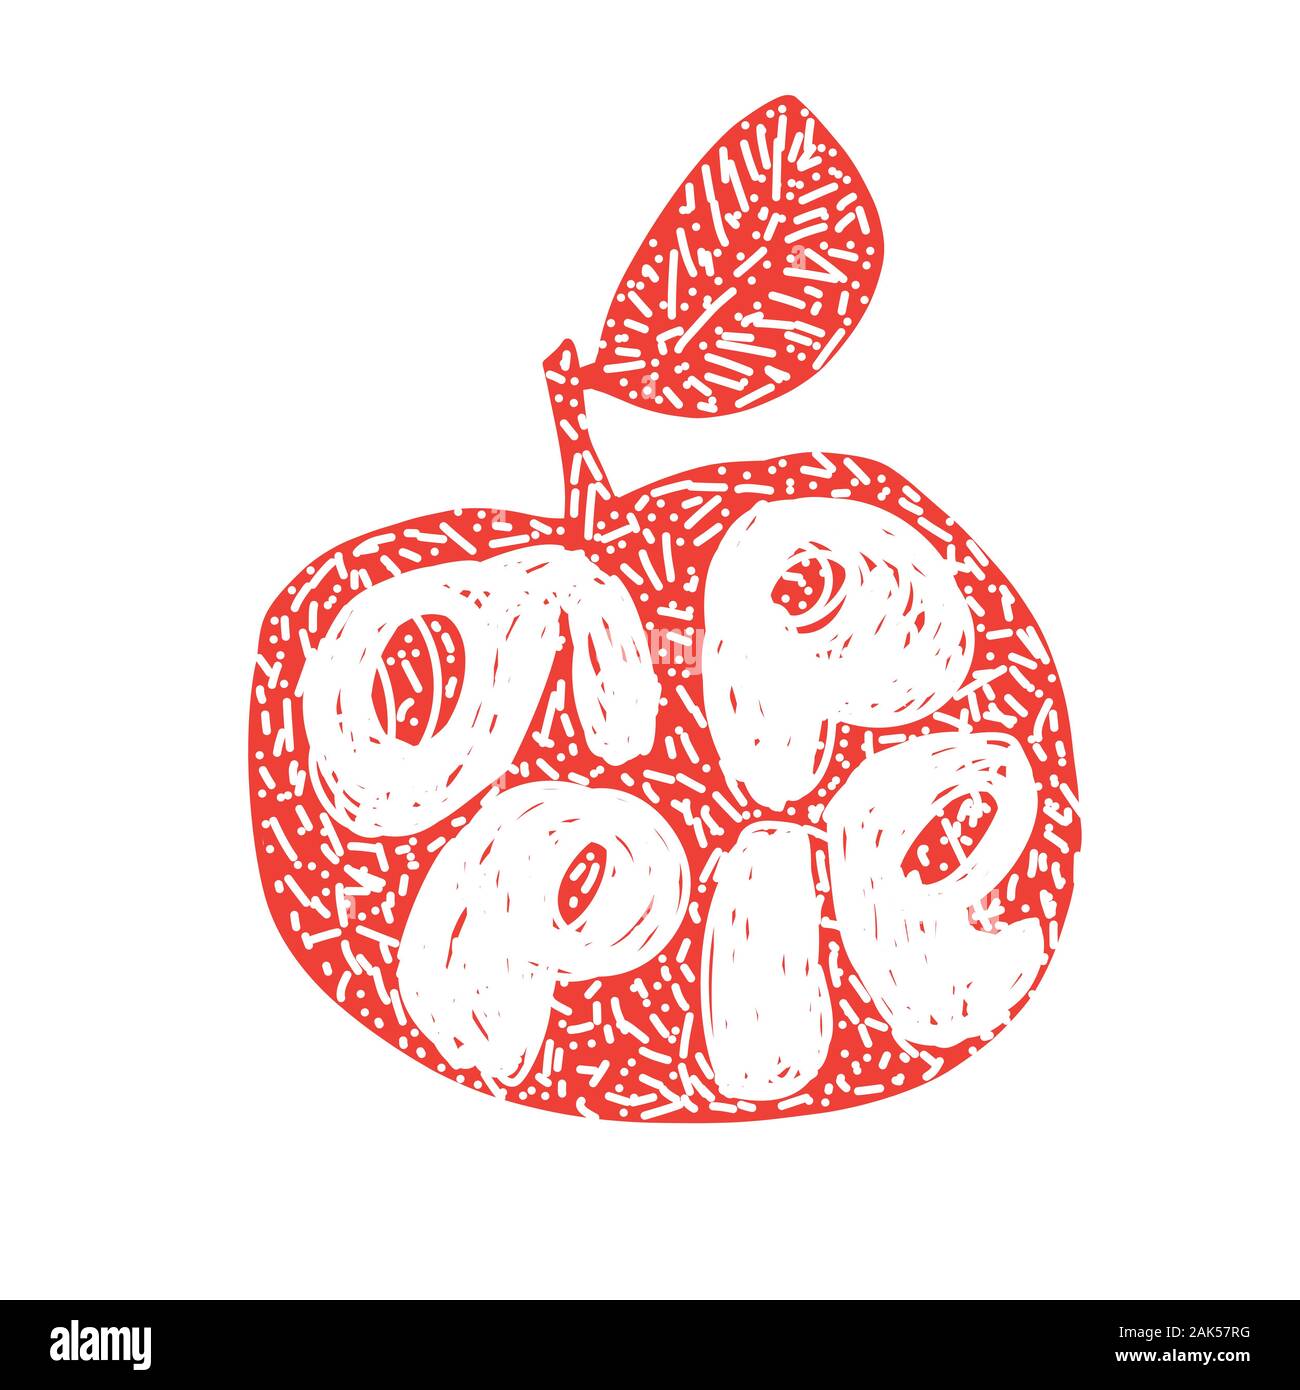 Red Apple Silhouette. Frisches Obst Typografie Vector Illustration, Handdrawn Schriftzug. Hand gezeichnet Font auf gesunden fruchtig Ernte apple Silhouette mit Stock Vektor